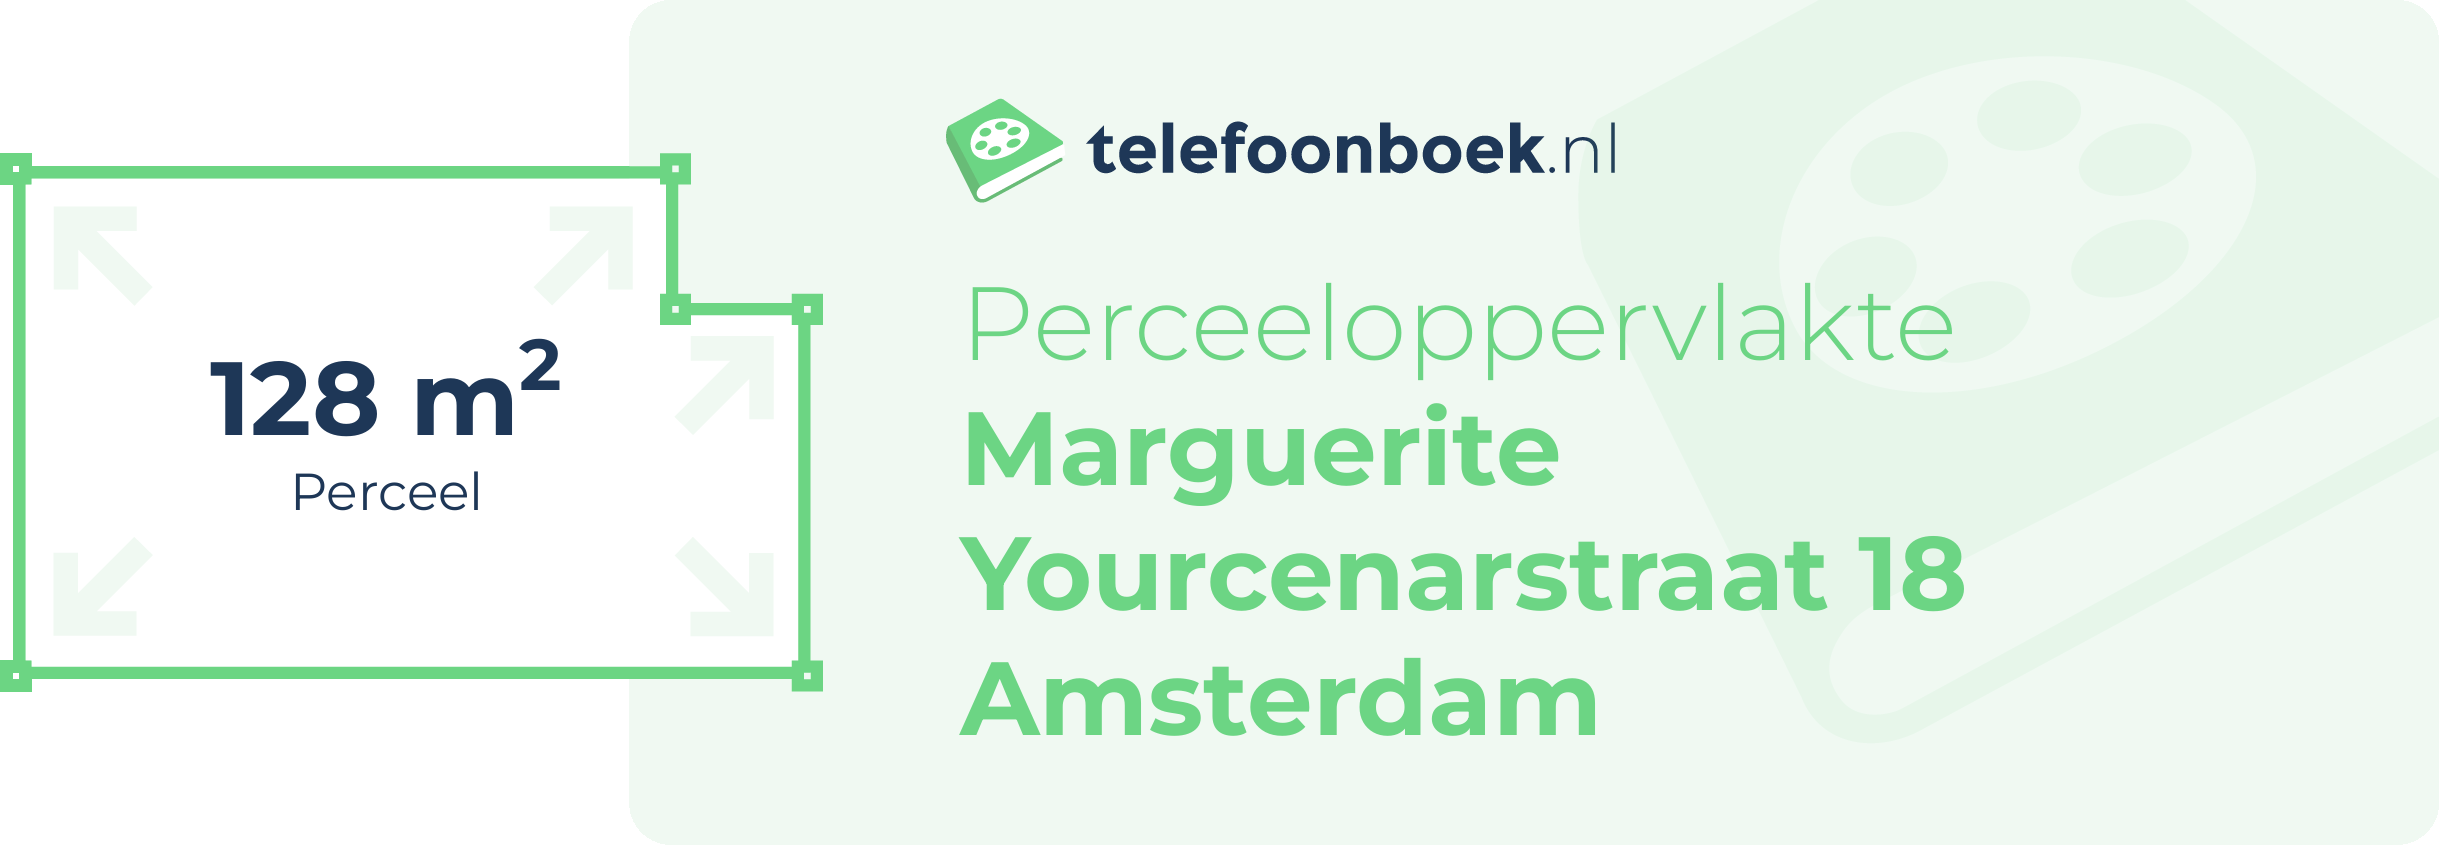 Perceeloppervlakte Marguerite Yourcenarstraat 18 Amsterdam